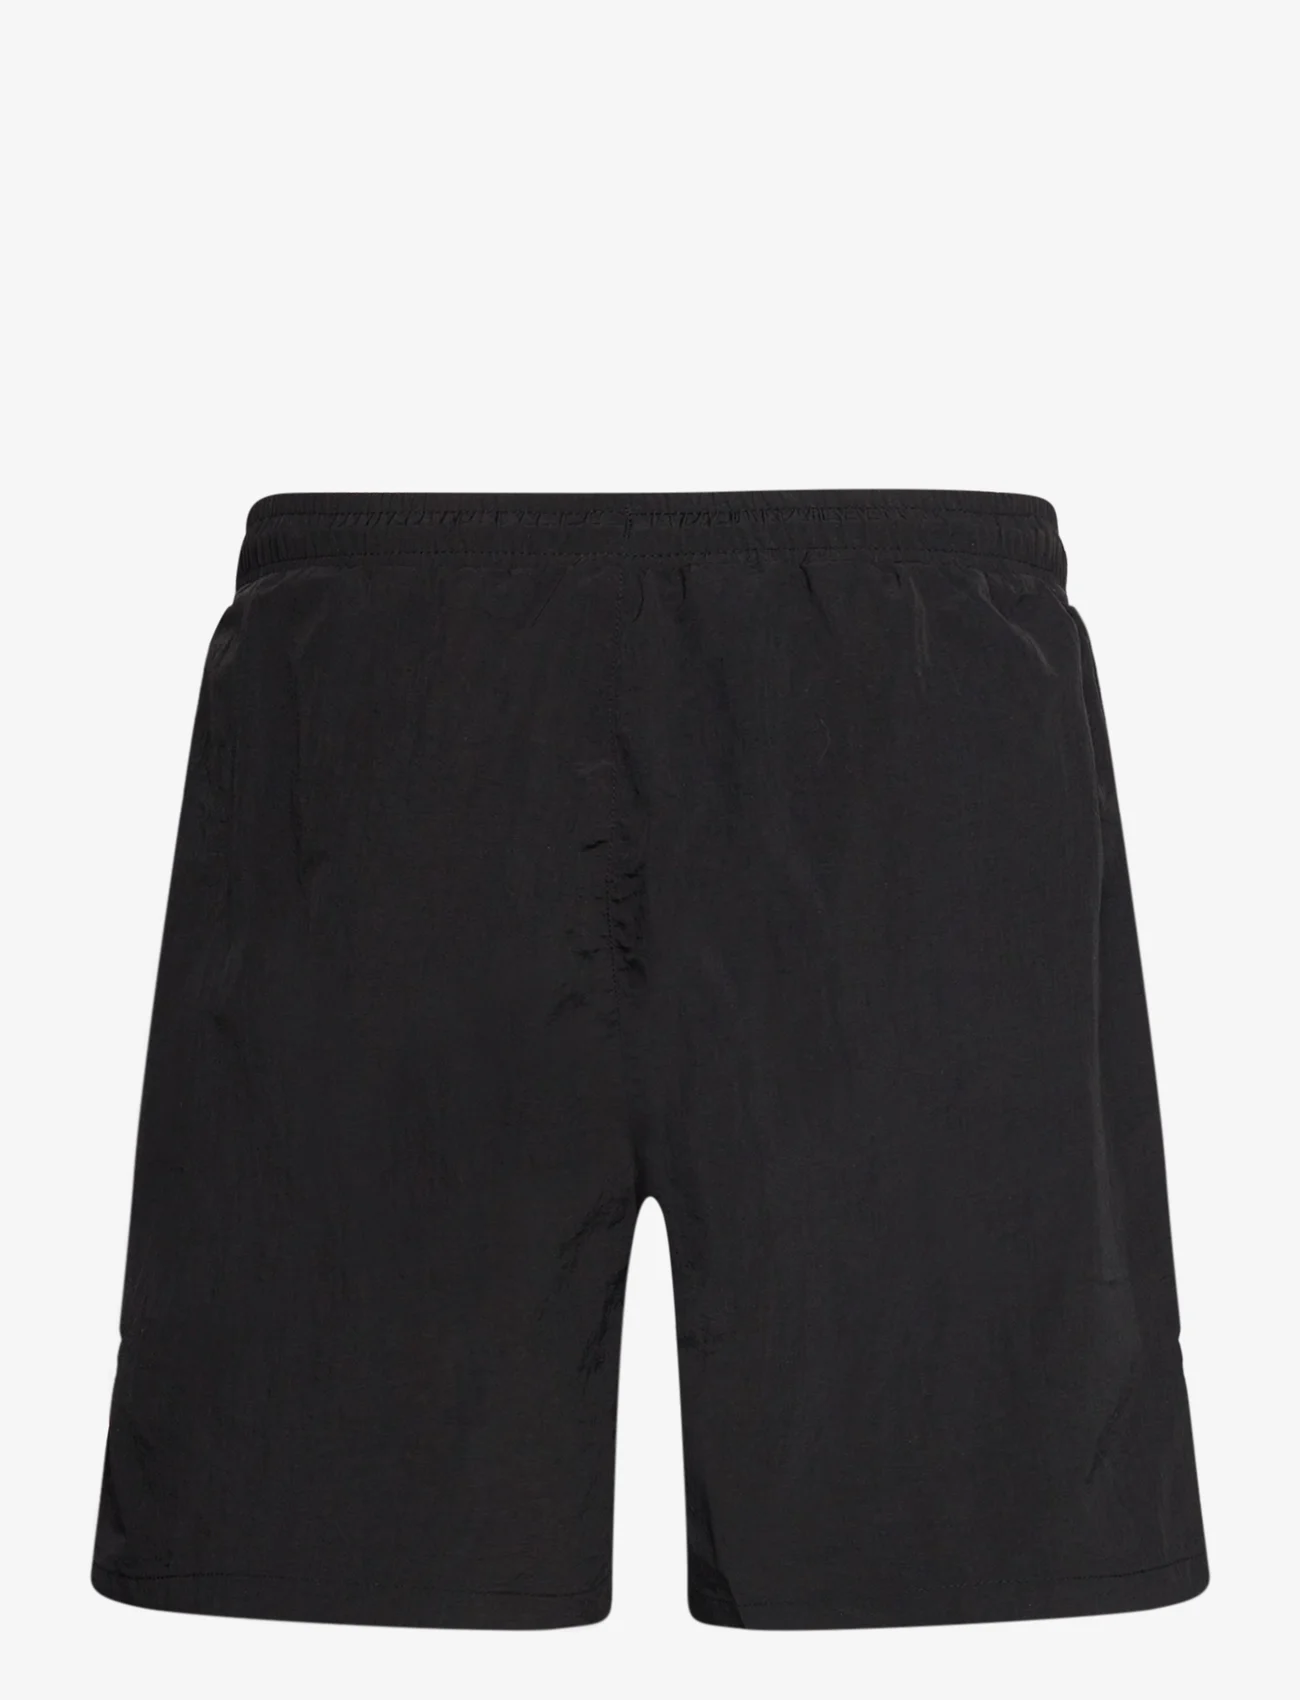 FILA - SWASILAND beach shorts - lägsta priserna - black - 1